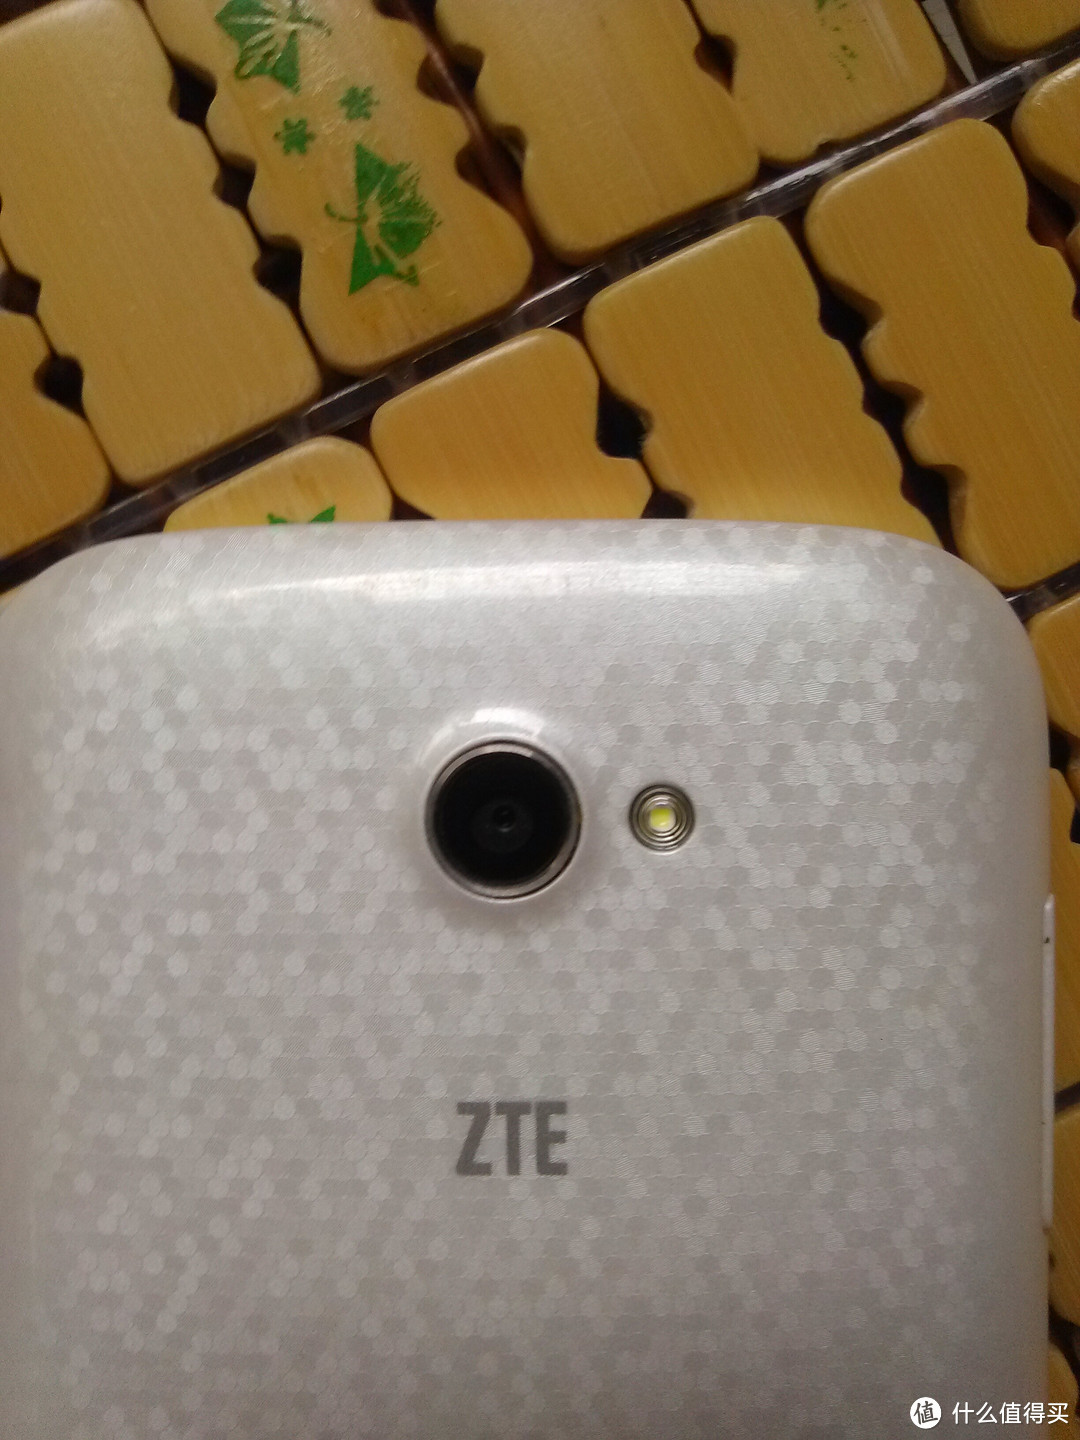 中国移动定制4G手机：ZTE 中兴 Q802T